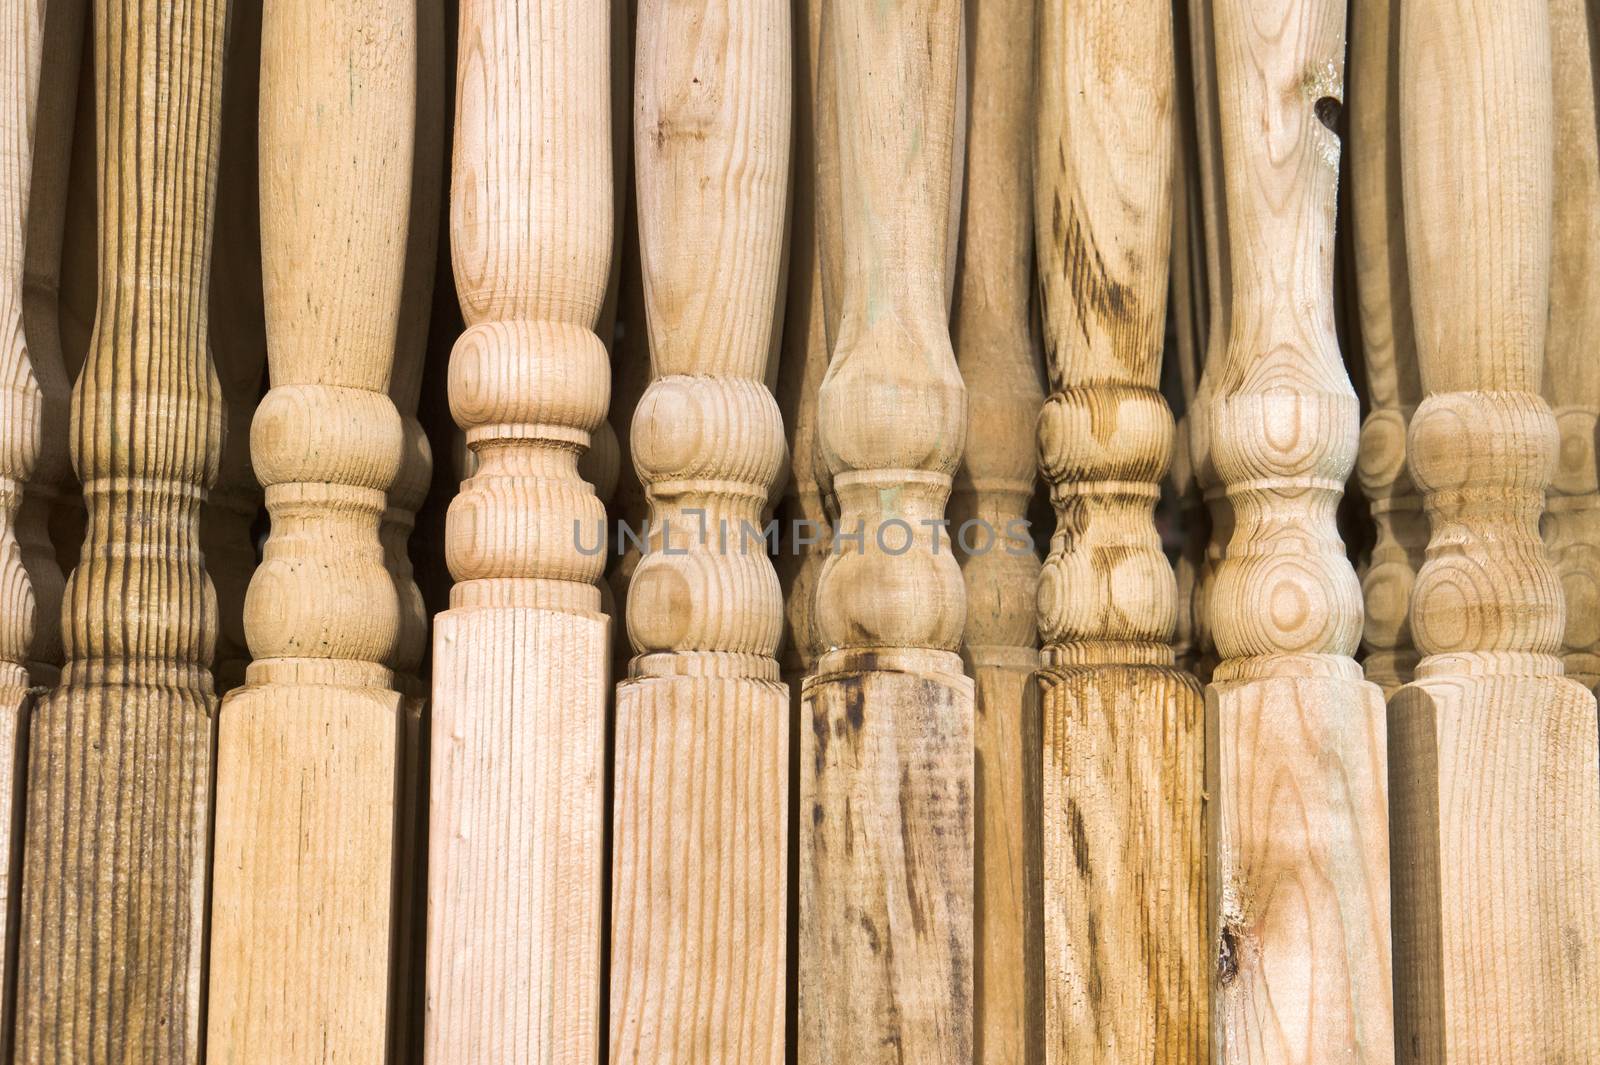 Wooden posts by trgowanlock